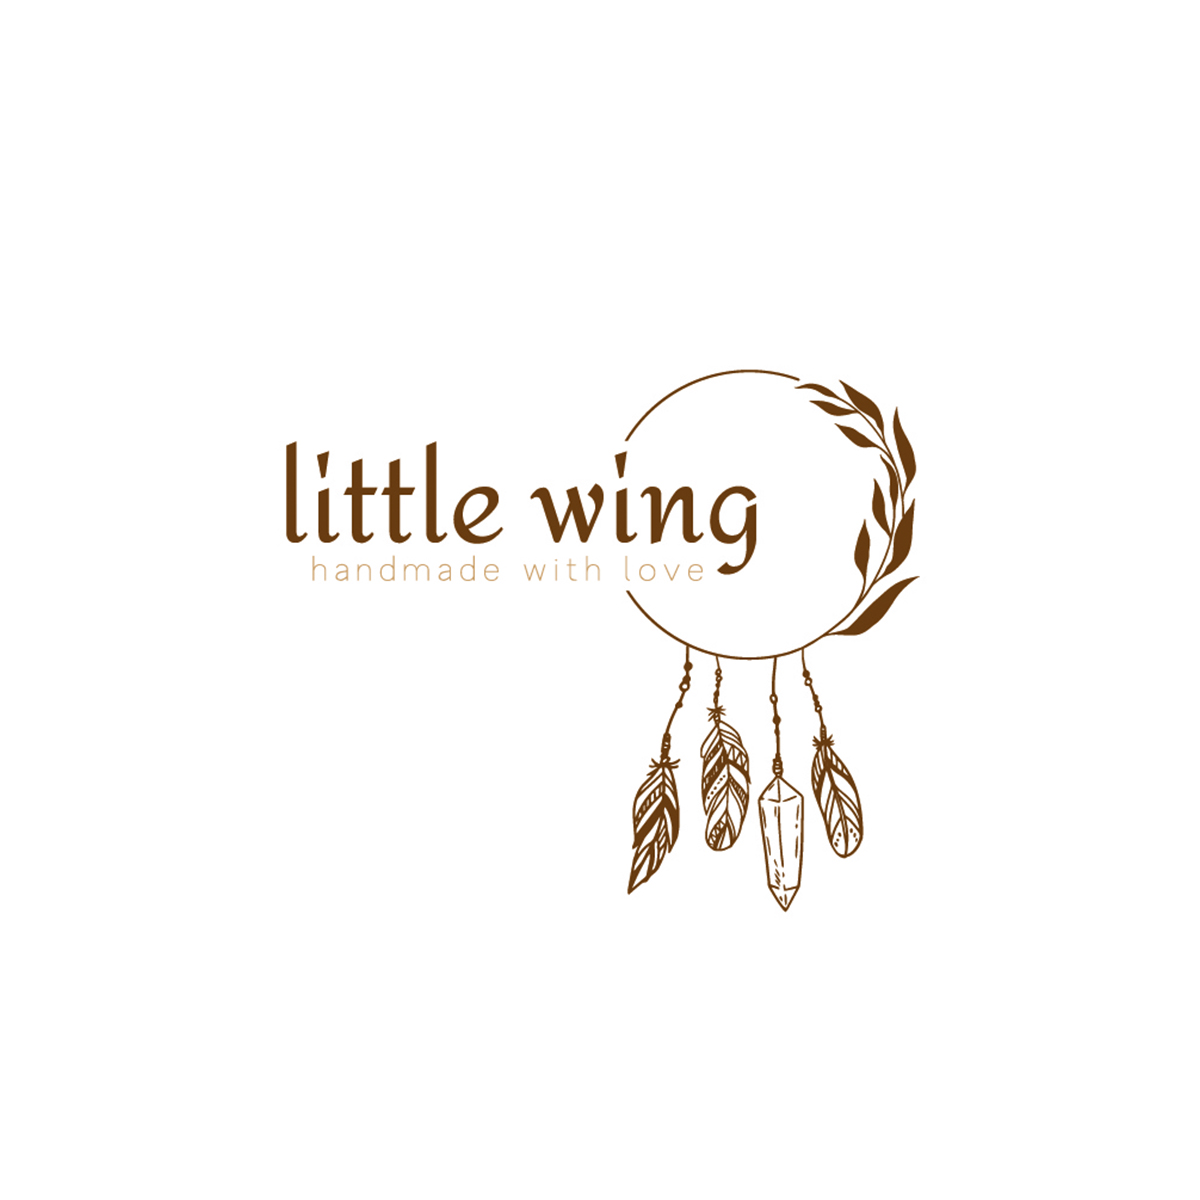 littlewing